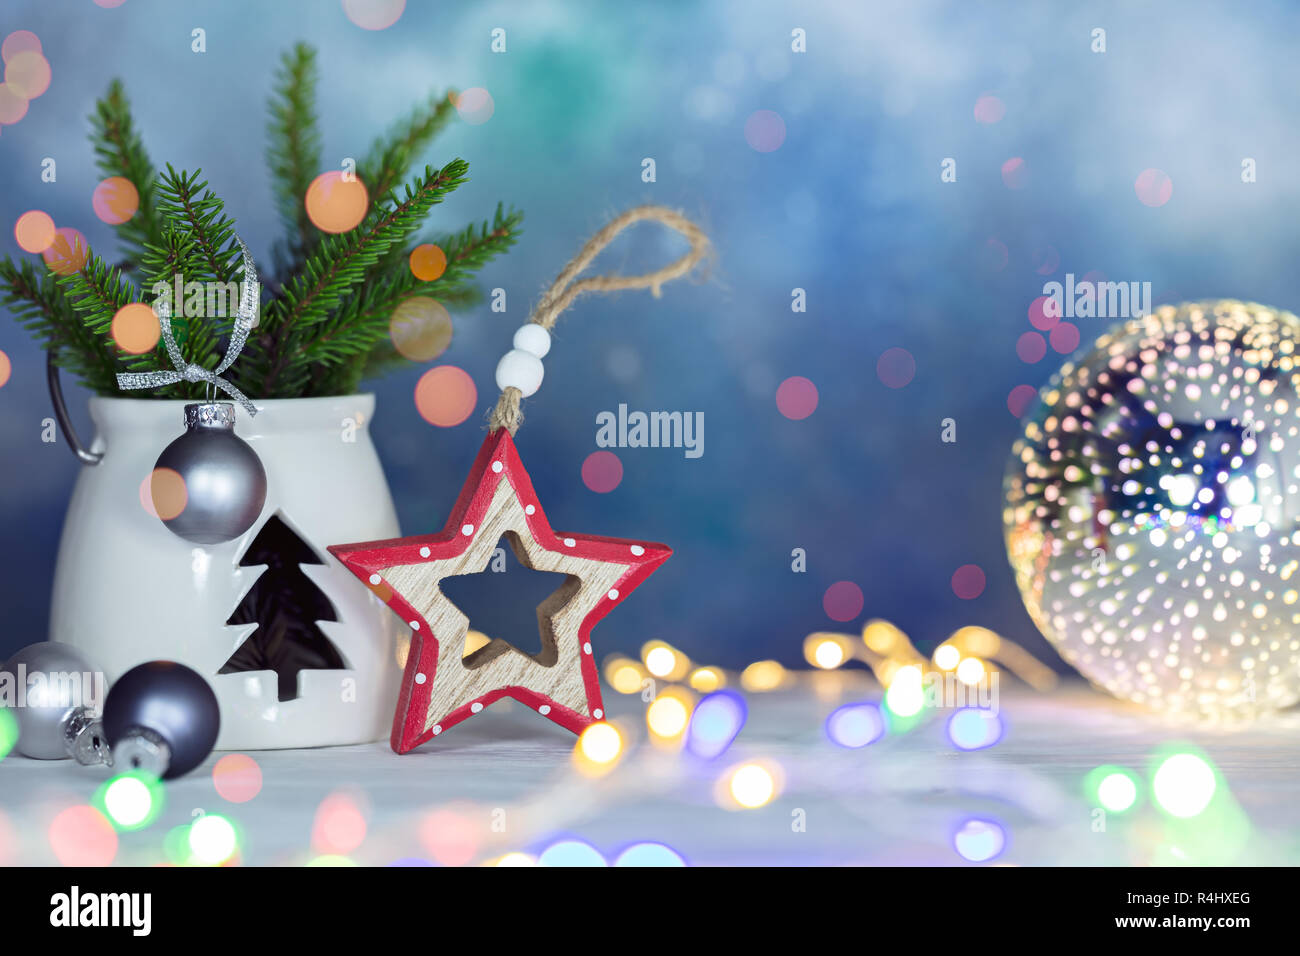 Las vacaciones de año nuevo decoración festiva con ramas de árbol de Navidad, artículos de decoración, y la resplandeciente luz retro guirnaldas Foto de stock